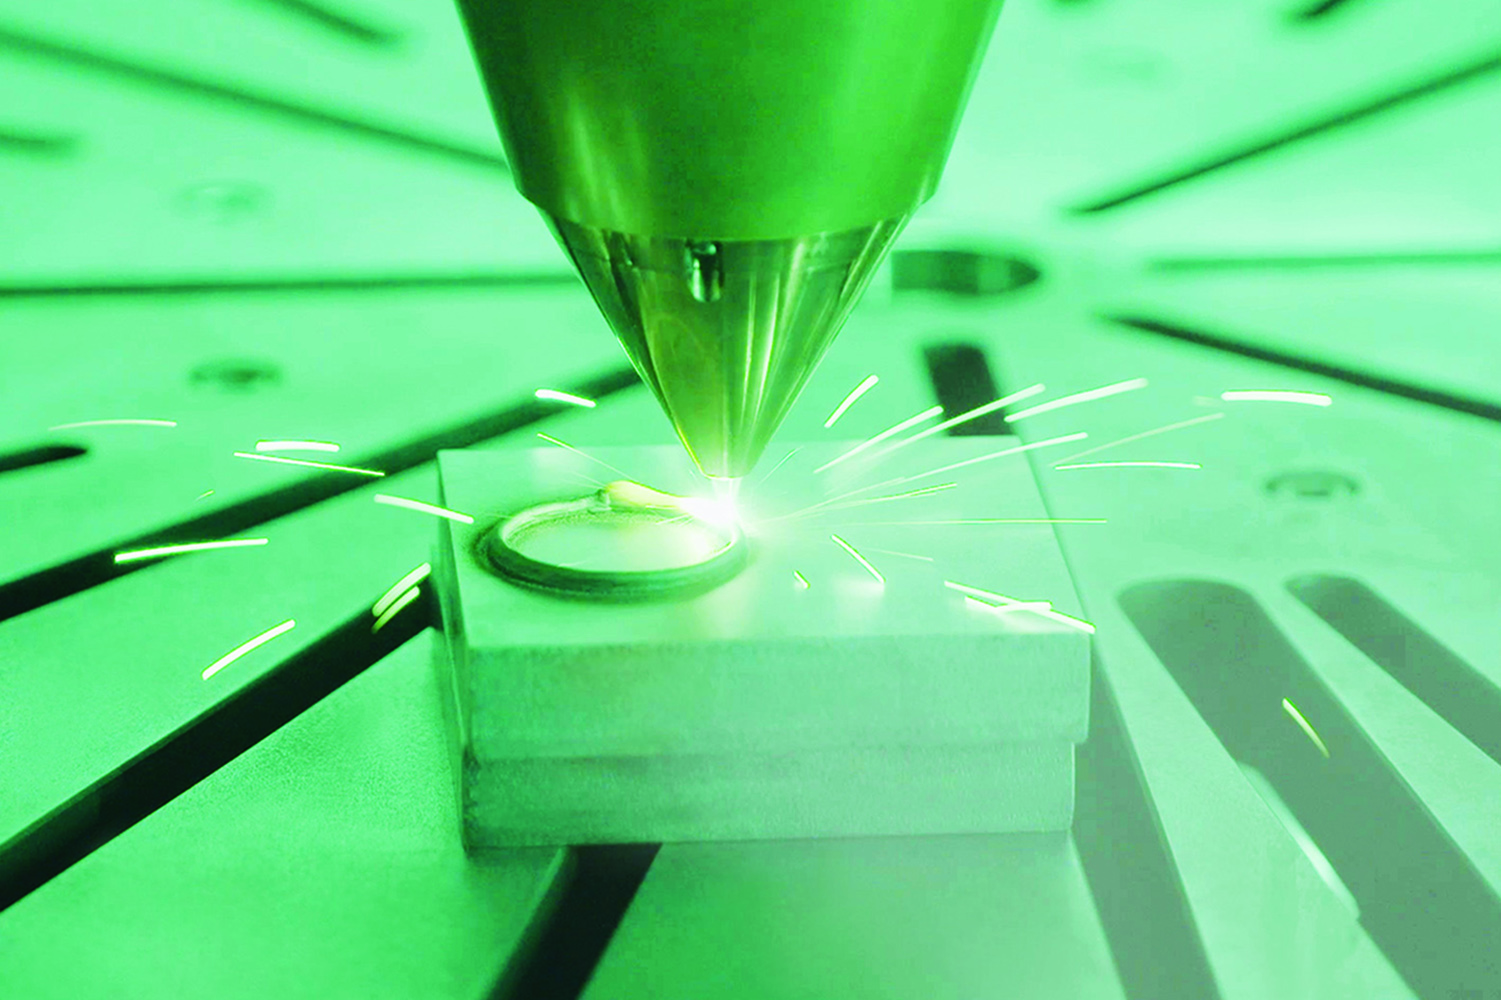 Am Fraunhofer IWS in Dresden wird das einsetzbare Spektrum von additiv verarbeitbaren Werkstoffen erweitert. Mittels maßgeschneiderter Laserauftragschweißprozesse lassen sich metallische Multi-Material-Bauteile realisieren.